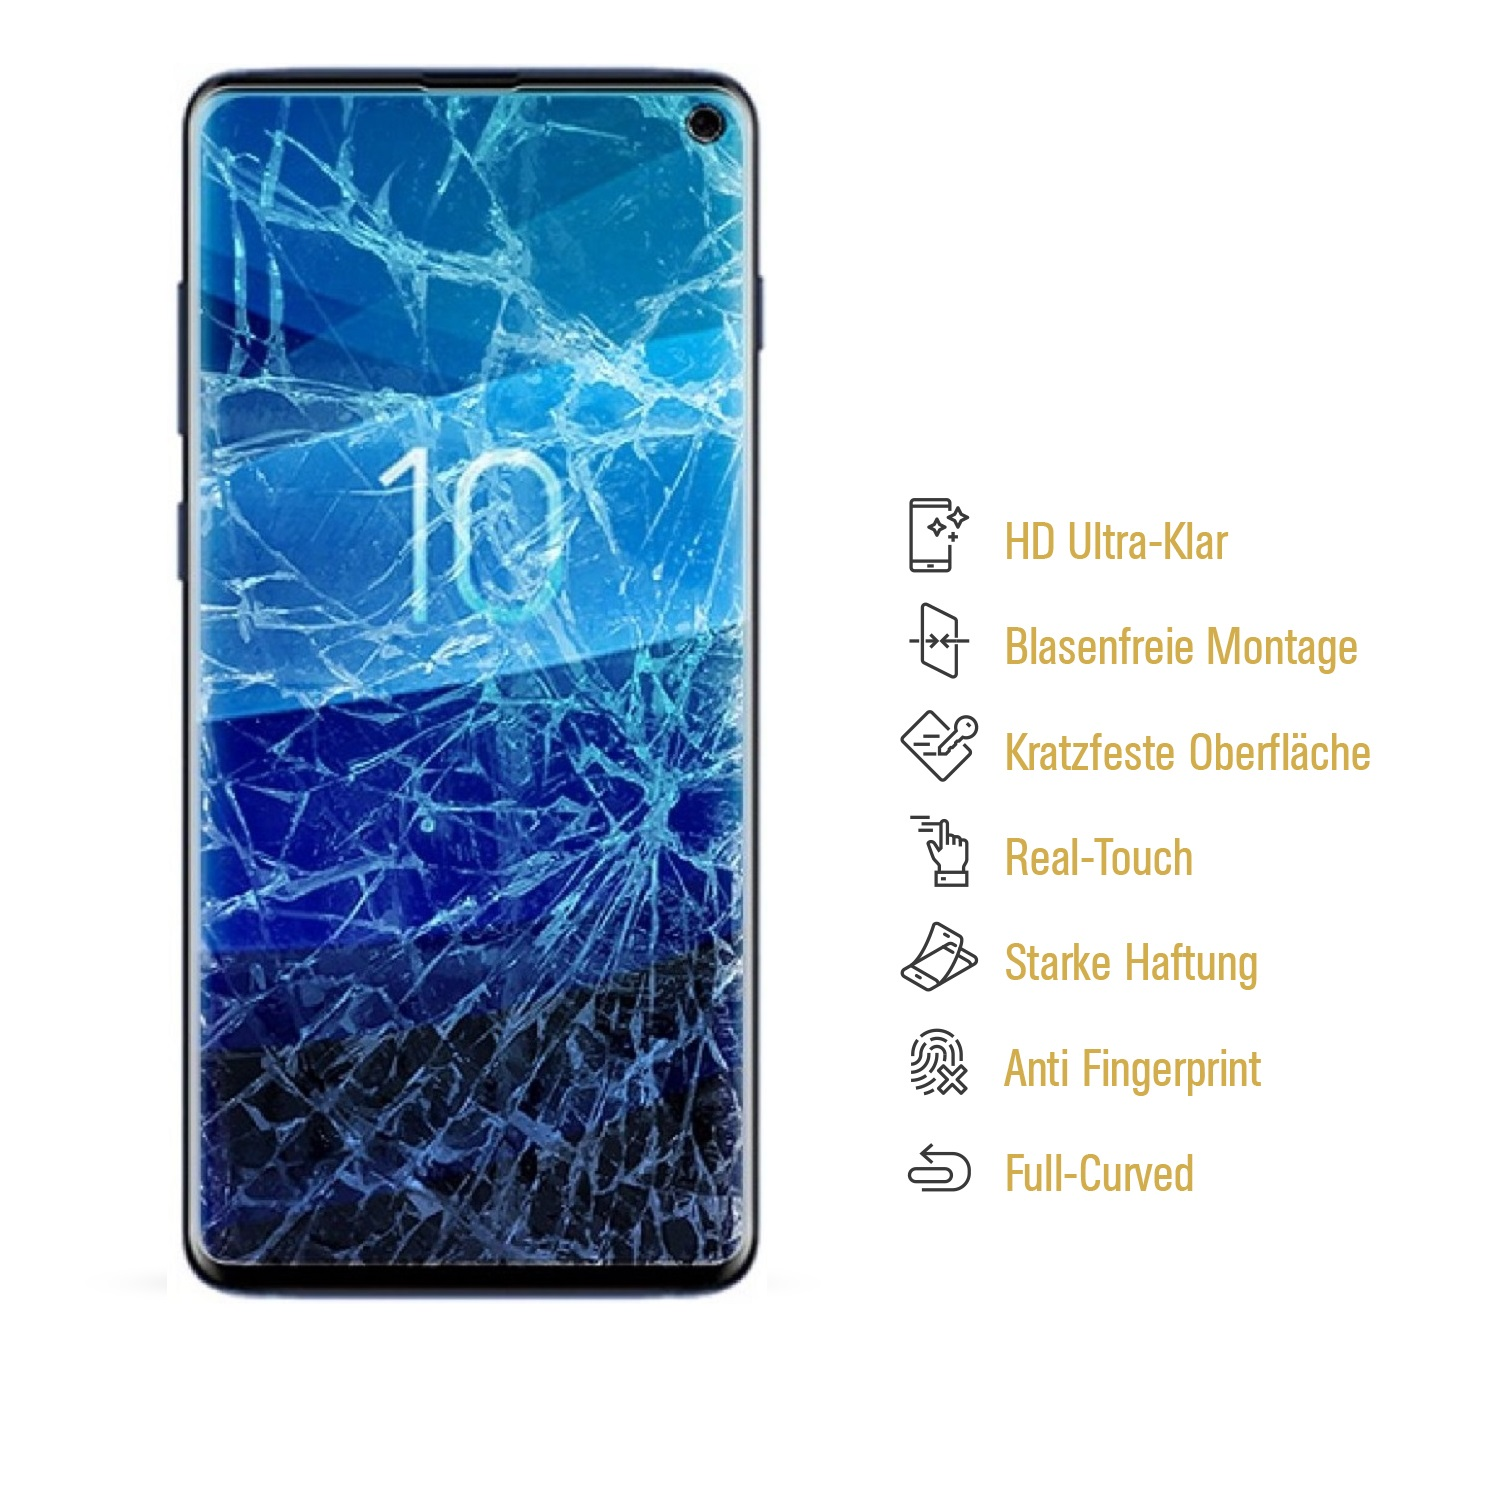 Flexibles Nano-Glas PROTECTORKING 4x Displayschutzfolie(für Samsung MATT ENTSPIEGELT Galaxy S10e)